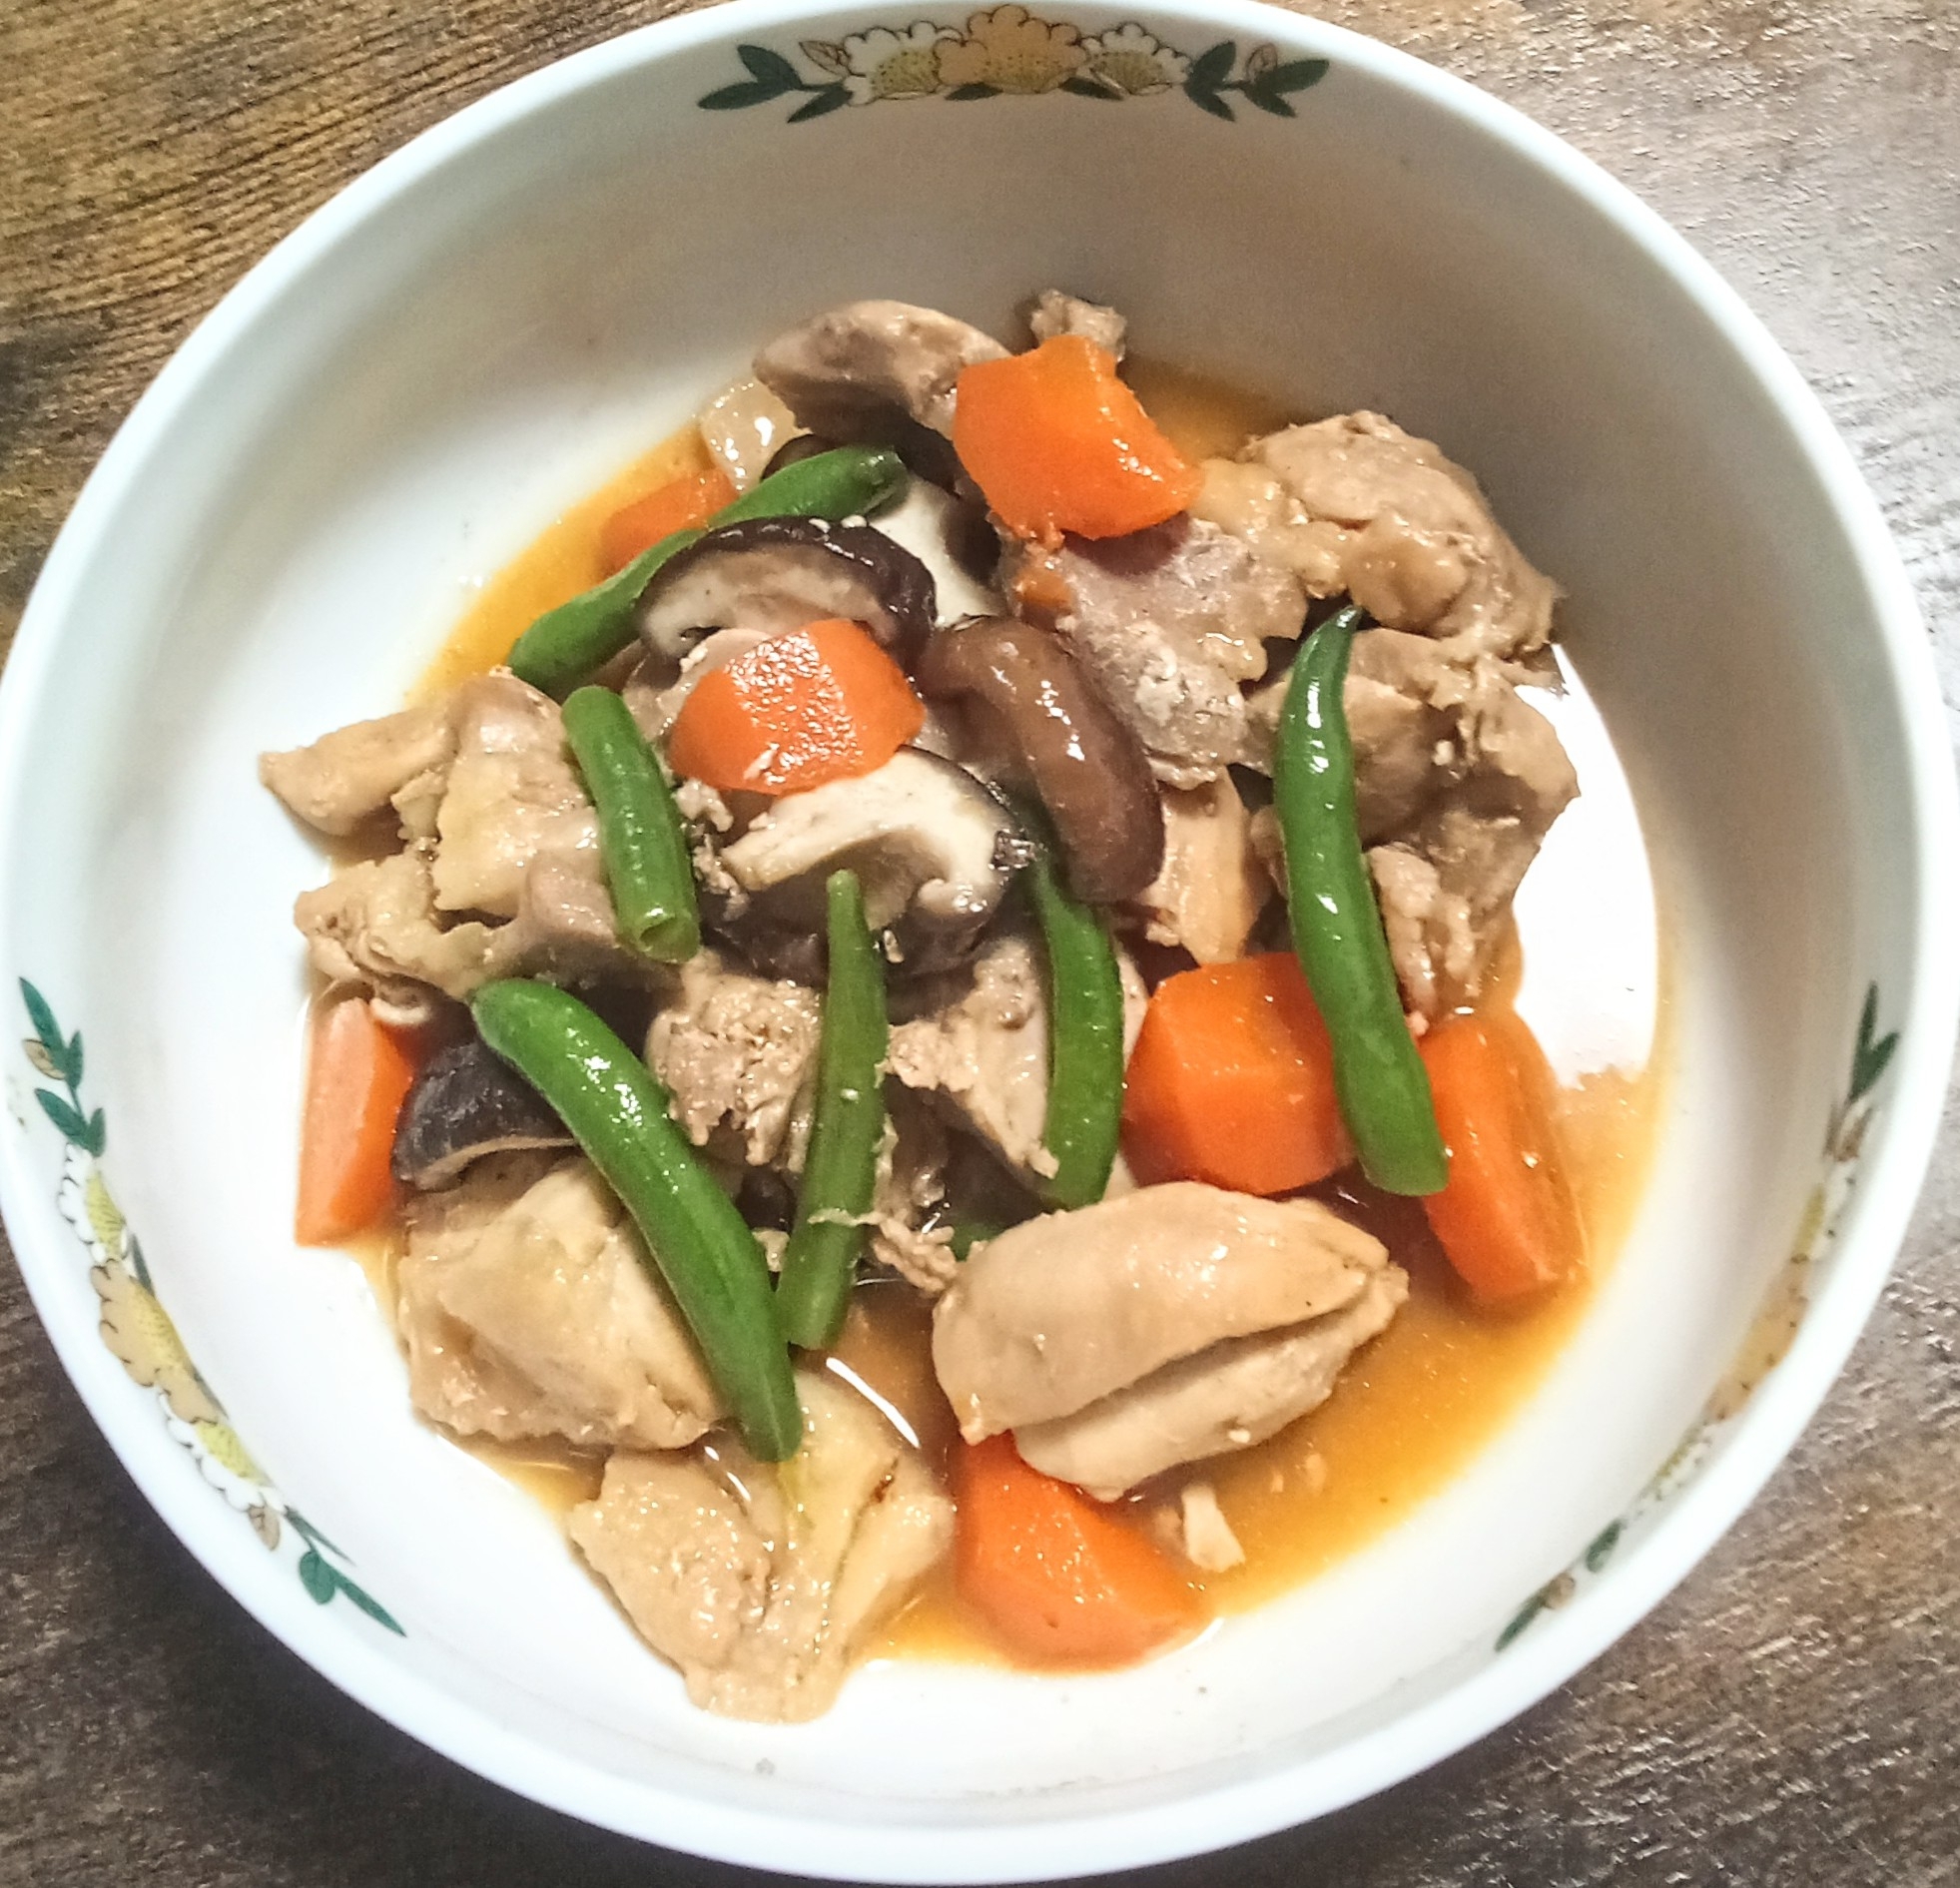 今日の煮物♫鶏もも肉とニンジンとしいたけの煮物